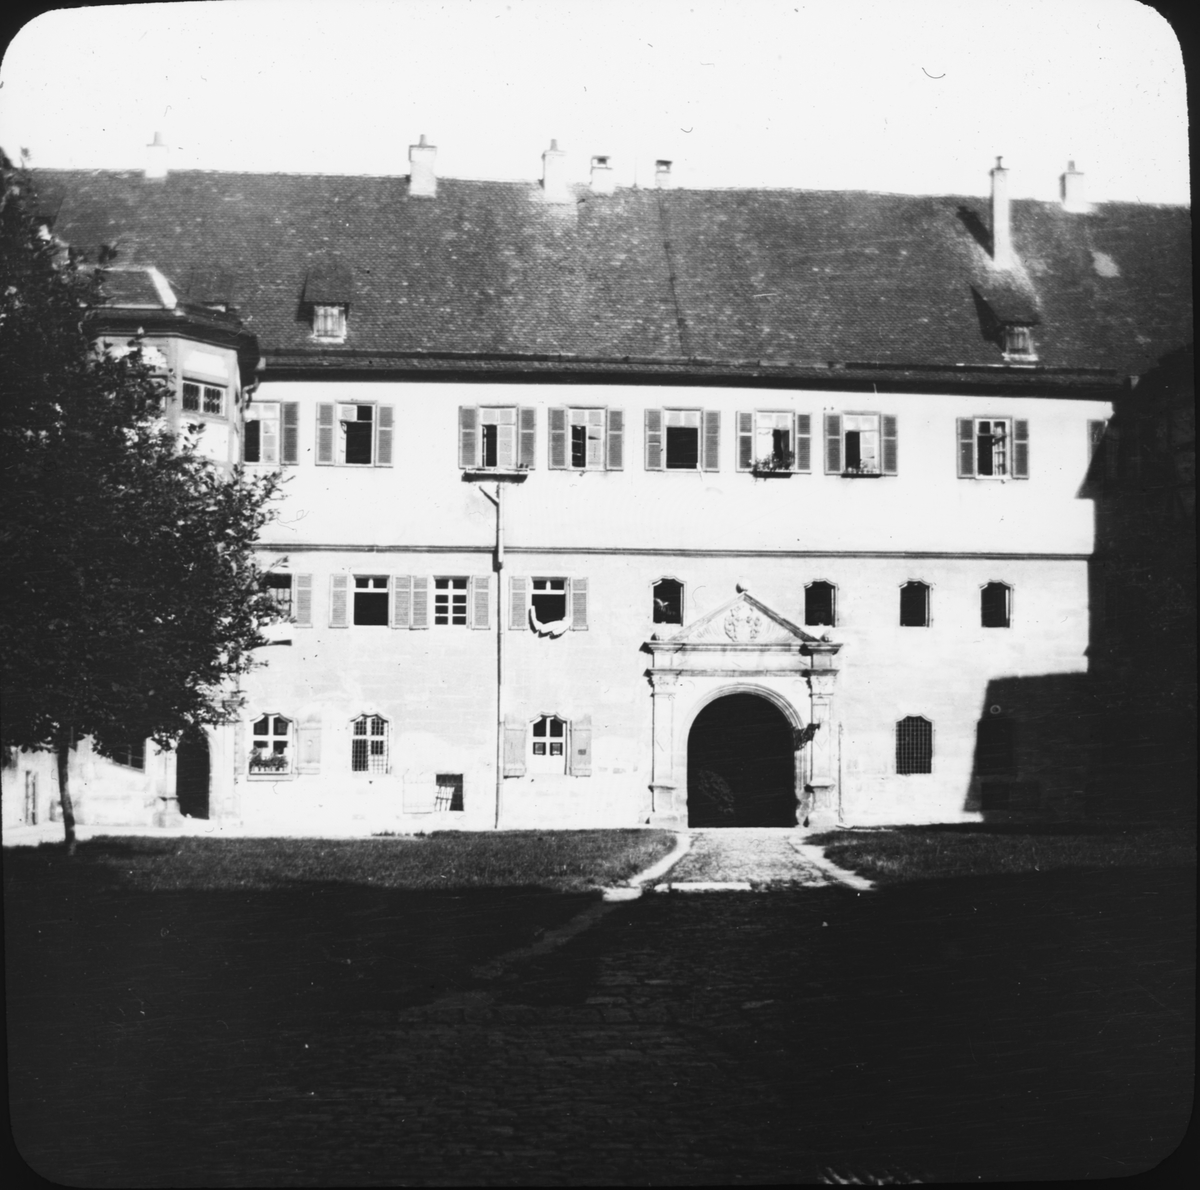 Skioptikonbild med motiv av Schloss Hohen, Tübingen.
Bilden har förvarats i kartong märkt: Resan 1908. Tübingen 7. Text på bild: "Schloss Hohen".